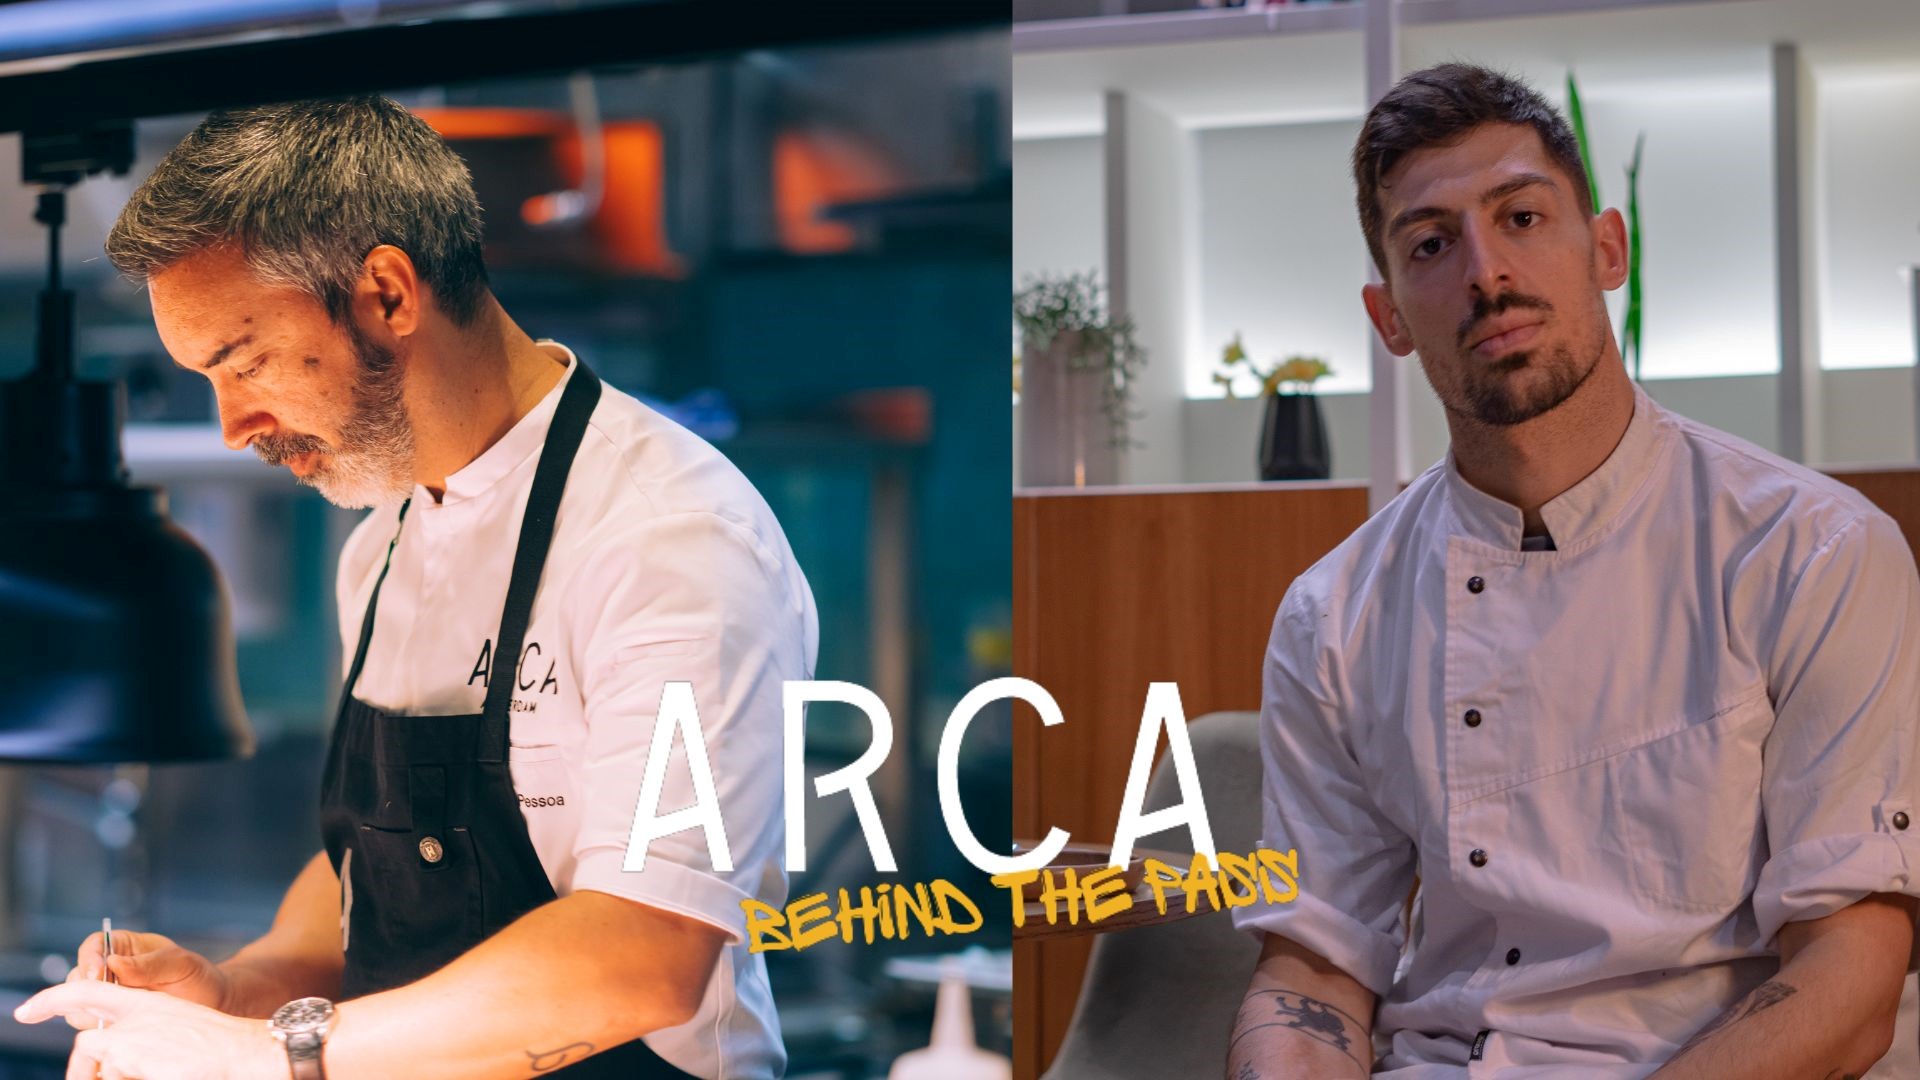 Arca Amsterdam krijgt bezoek uit Portugal voor vijfde editie van Behind the Pass